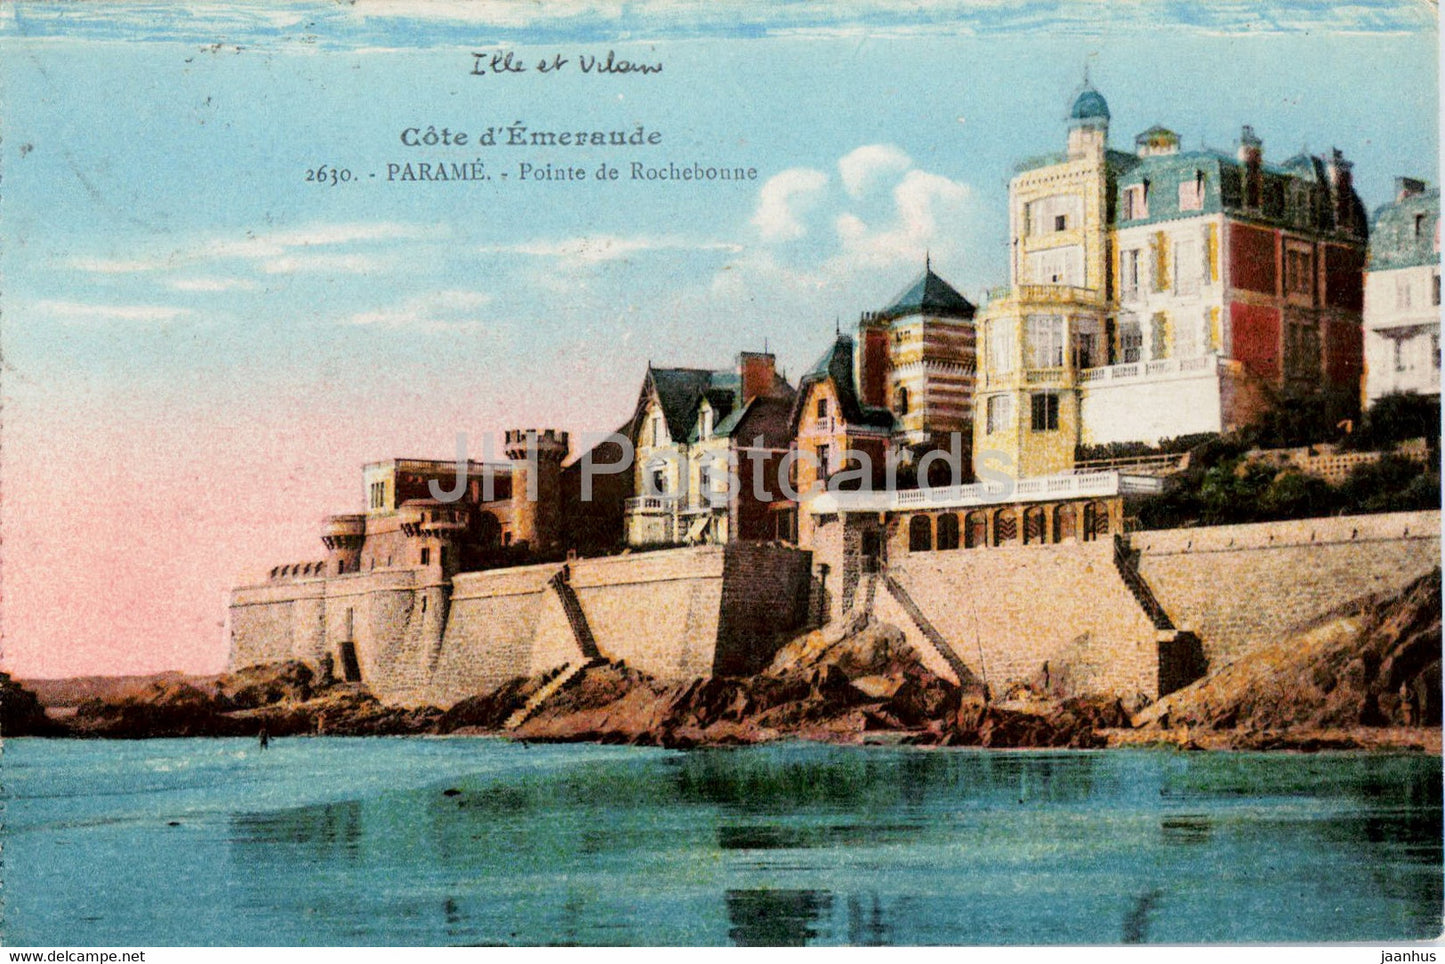 Parame - Pointe de Rochebonne - Cote d'Emeraude - 2630 - old postcard - 1926 - France - used - JH Postcards